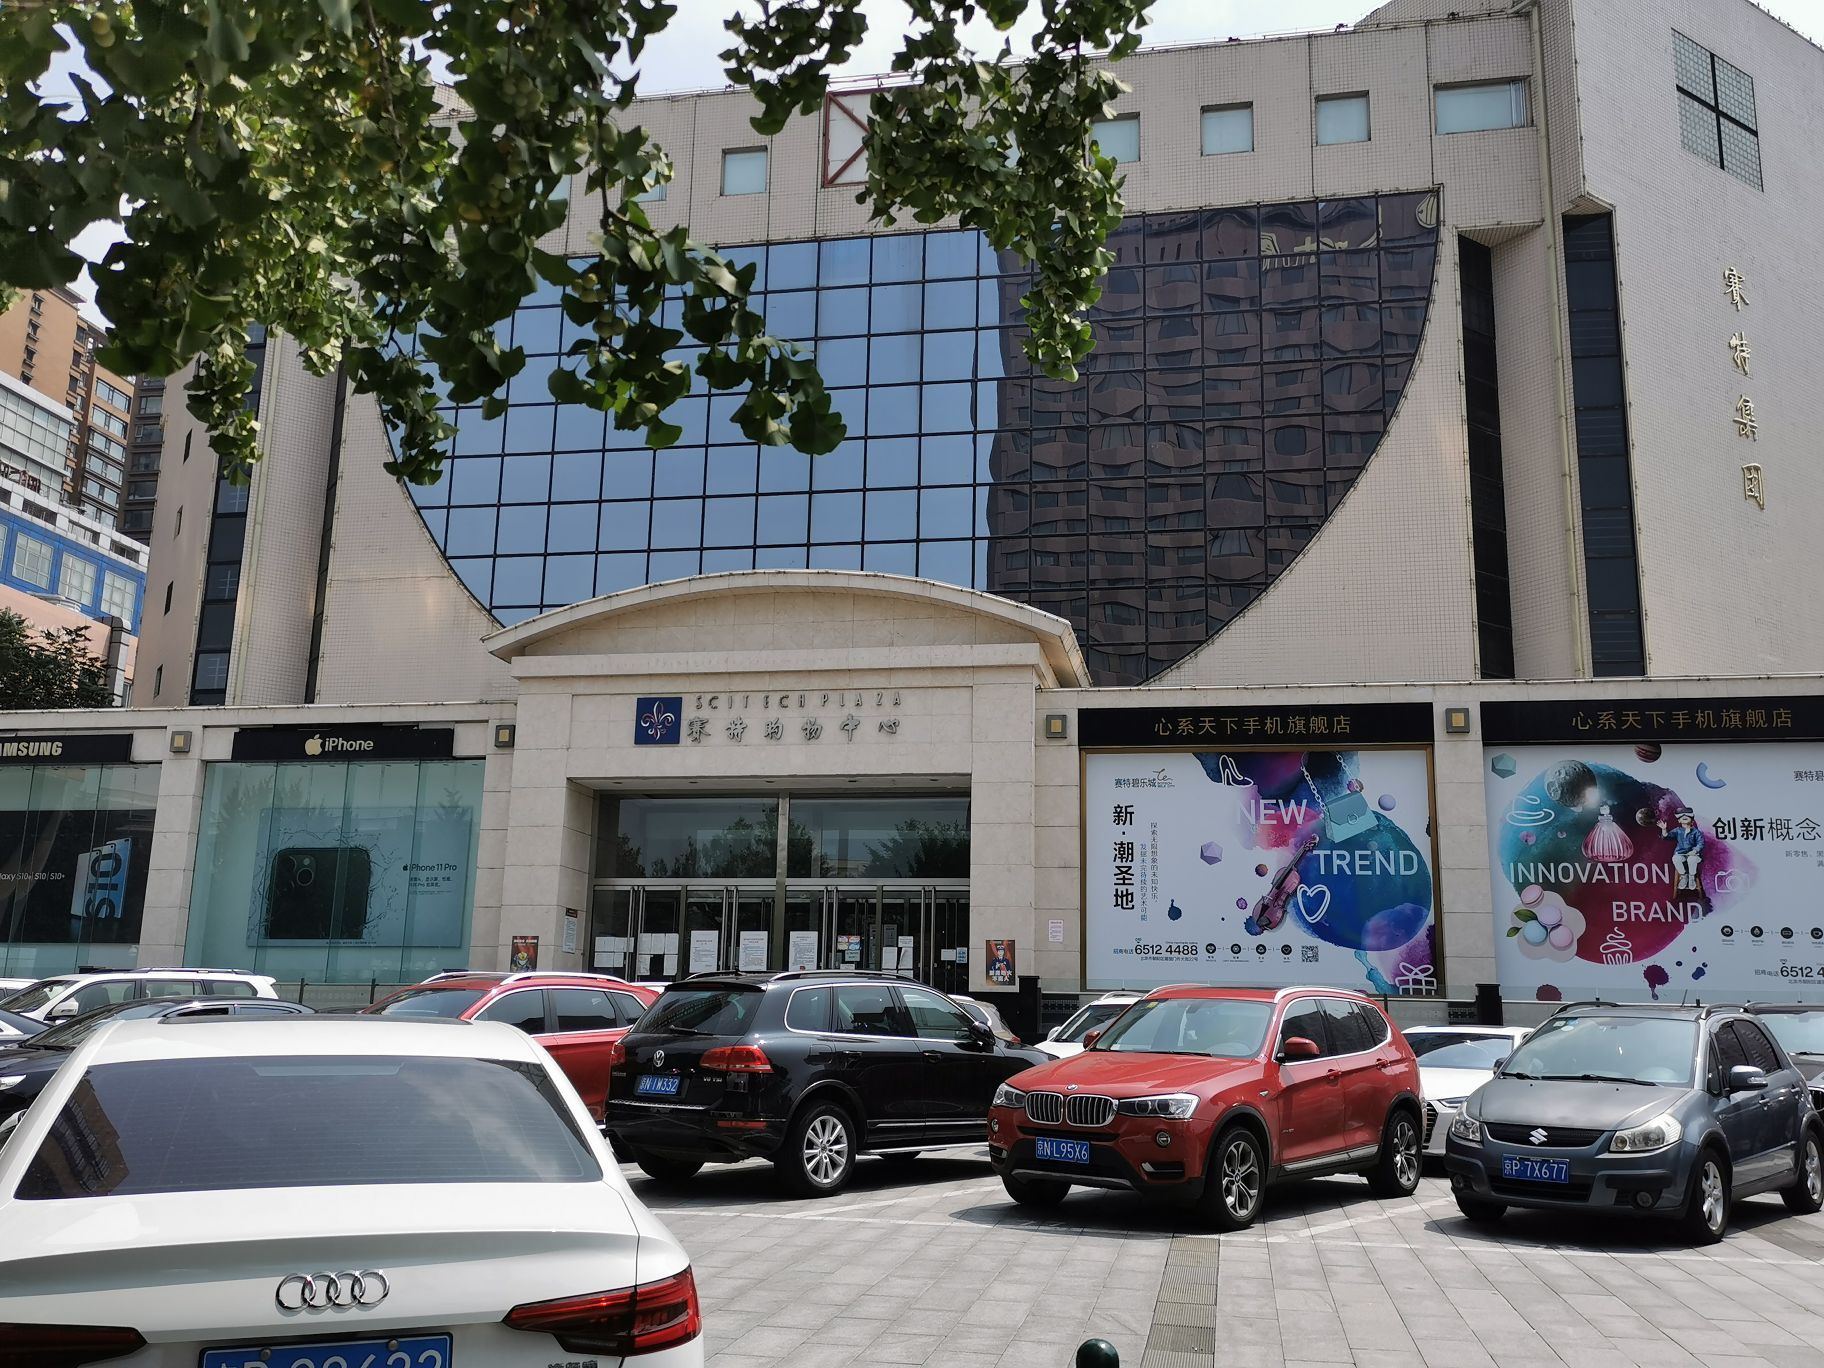 【携程攻略】北京赛特购物中心购物,长安街边上的老字号了,在建国门